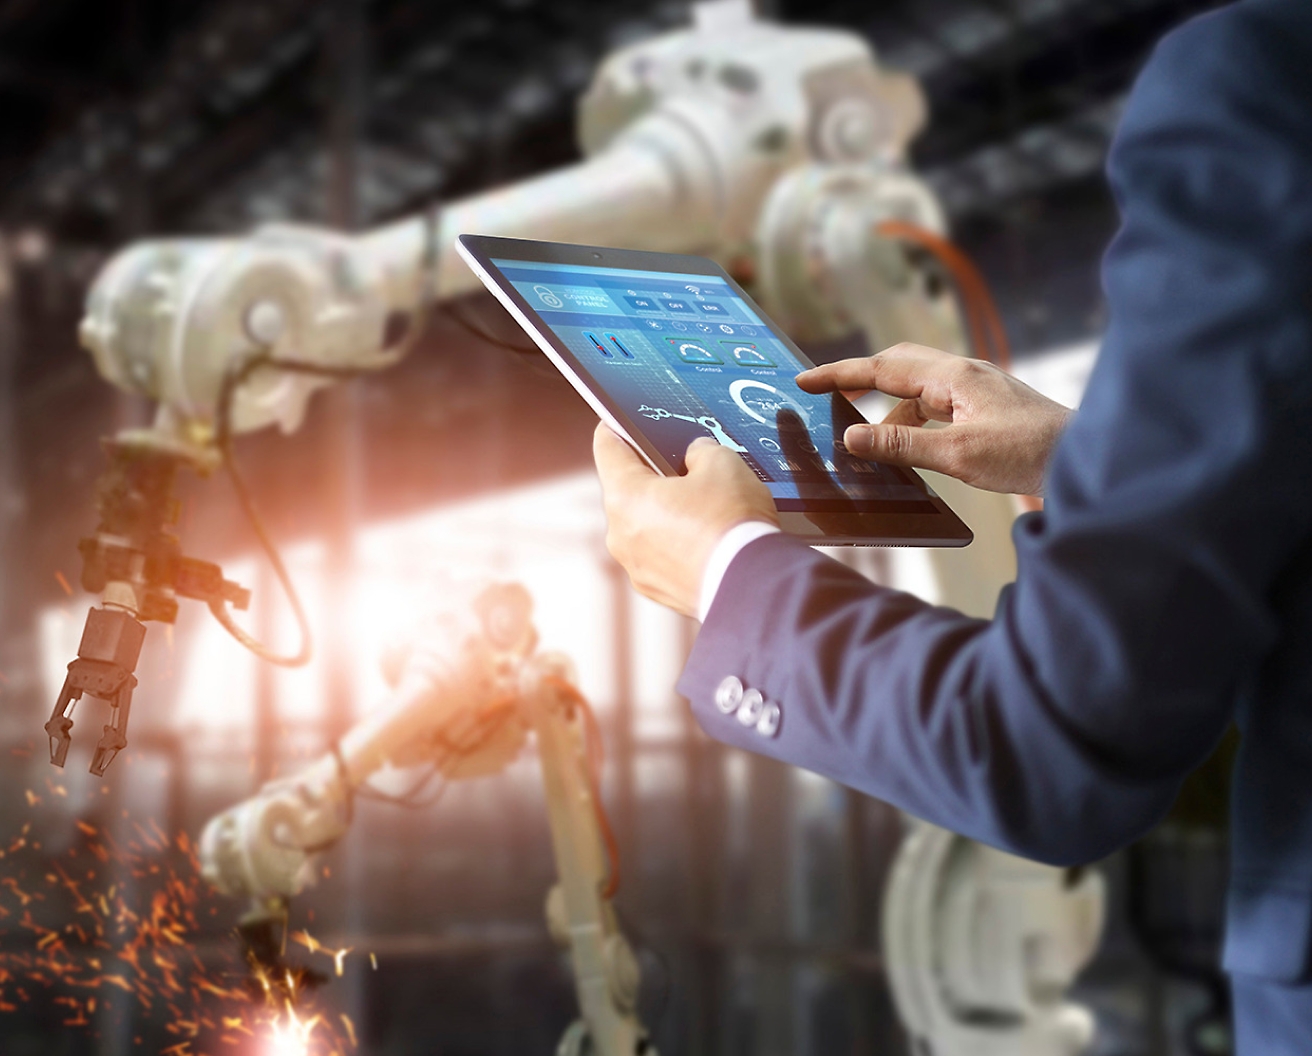 工場にいる人がタブレットを使ってロボット アームを操作し、高度な自動化テクノロジを強調しています。